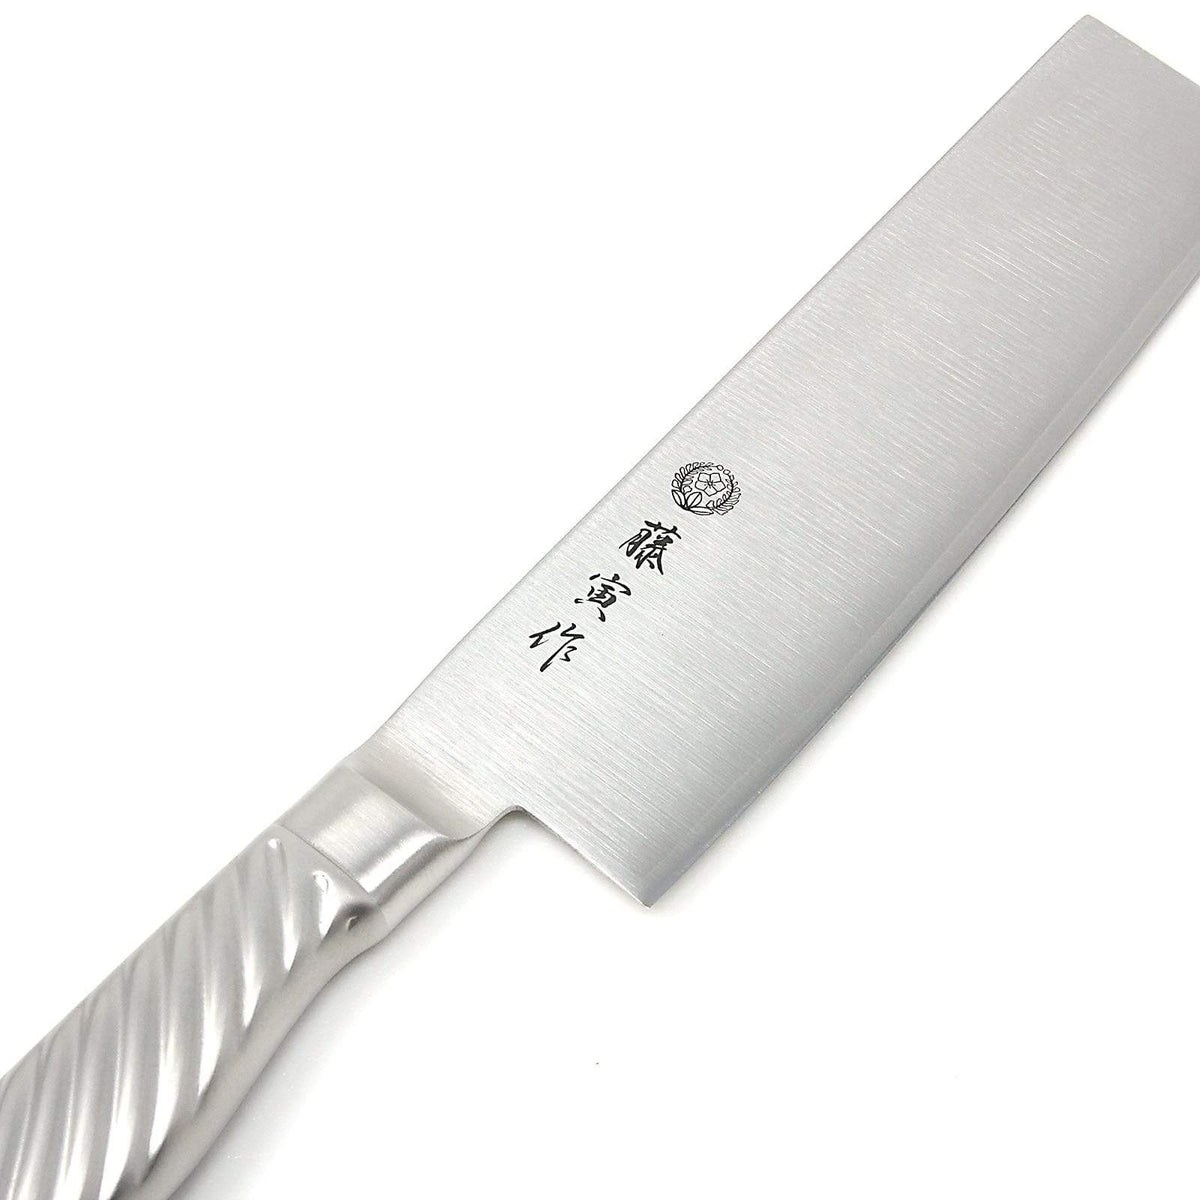 Tojiro Fujitora DP 3-Layer Nakiri Knife with Stainless Steel Handle 165mm FU-894 Nakiri Knives